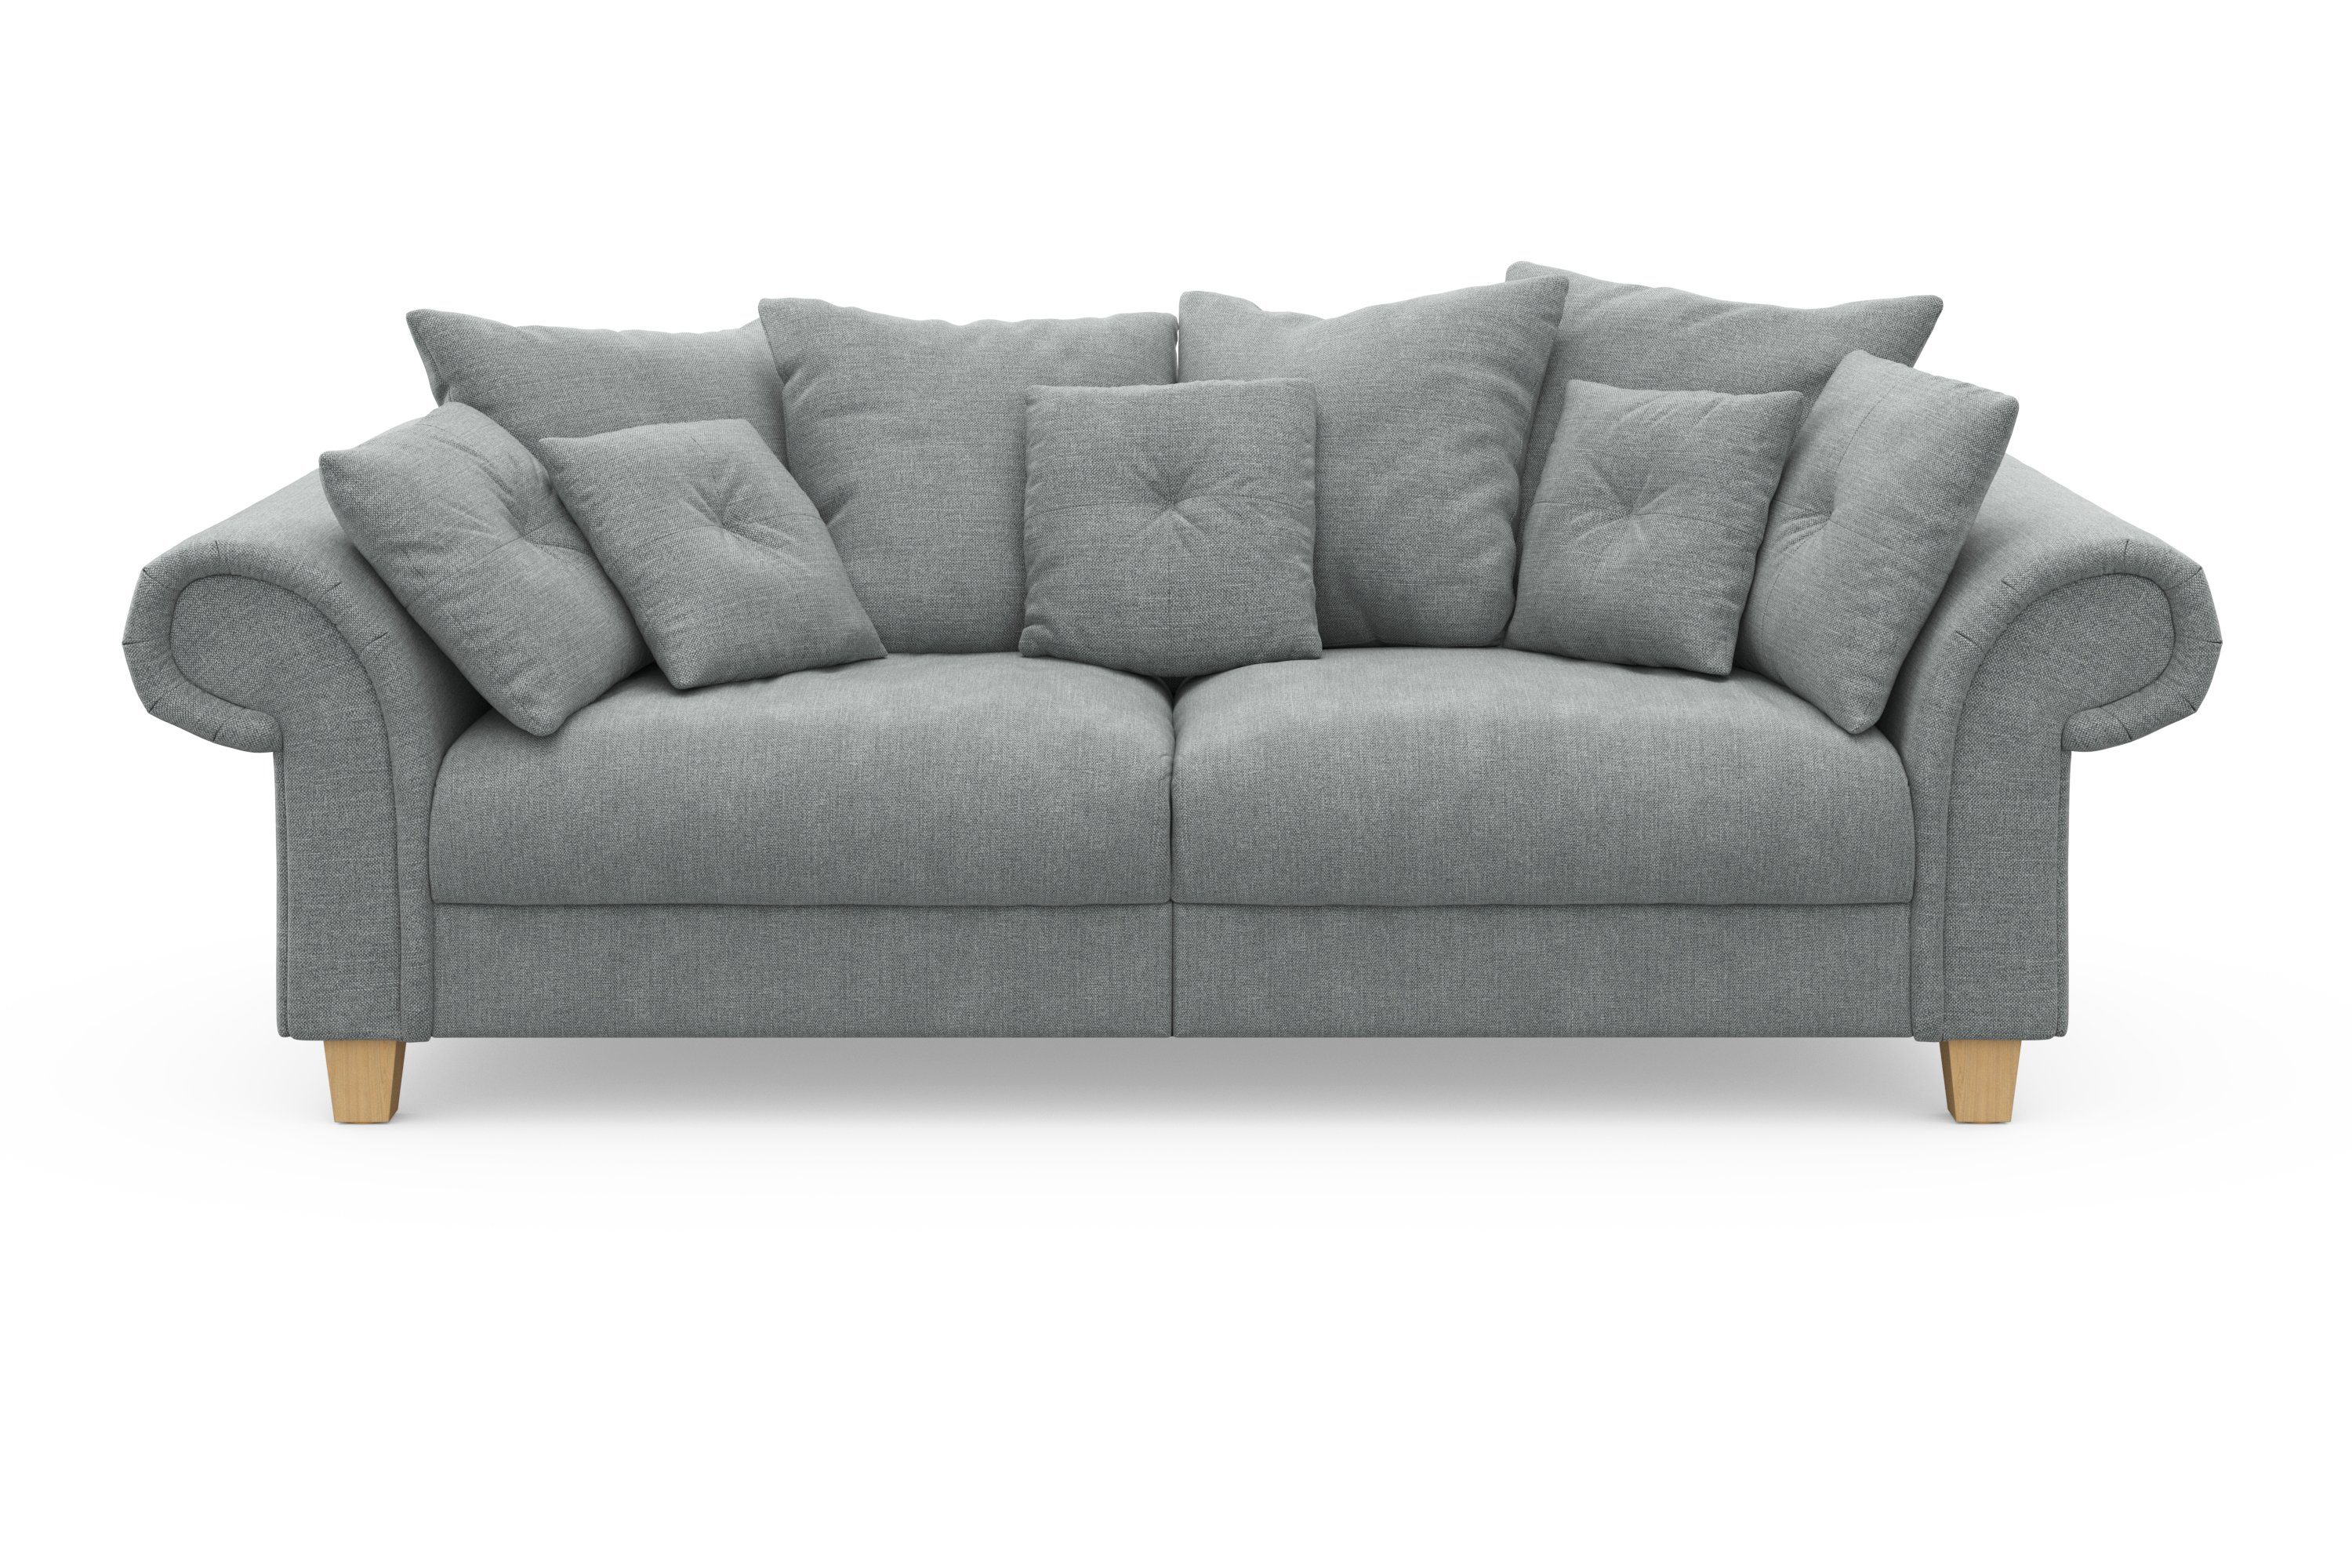 Home affaire Big-Sofa Queenie Megasofa, viele kuschelige Kissen mit weichem und Sitzkomfort Teile, Design, 2 zeitlosem